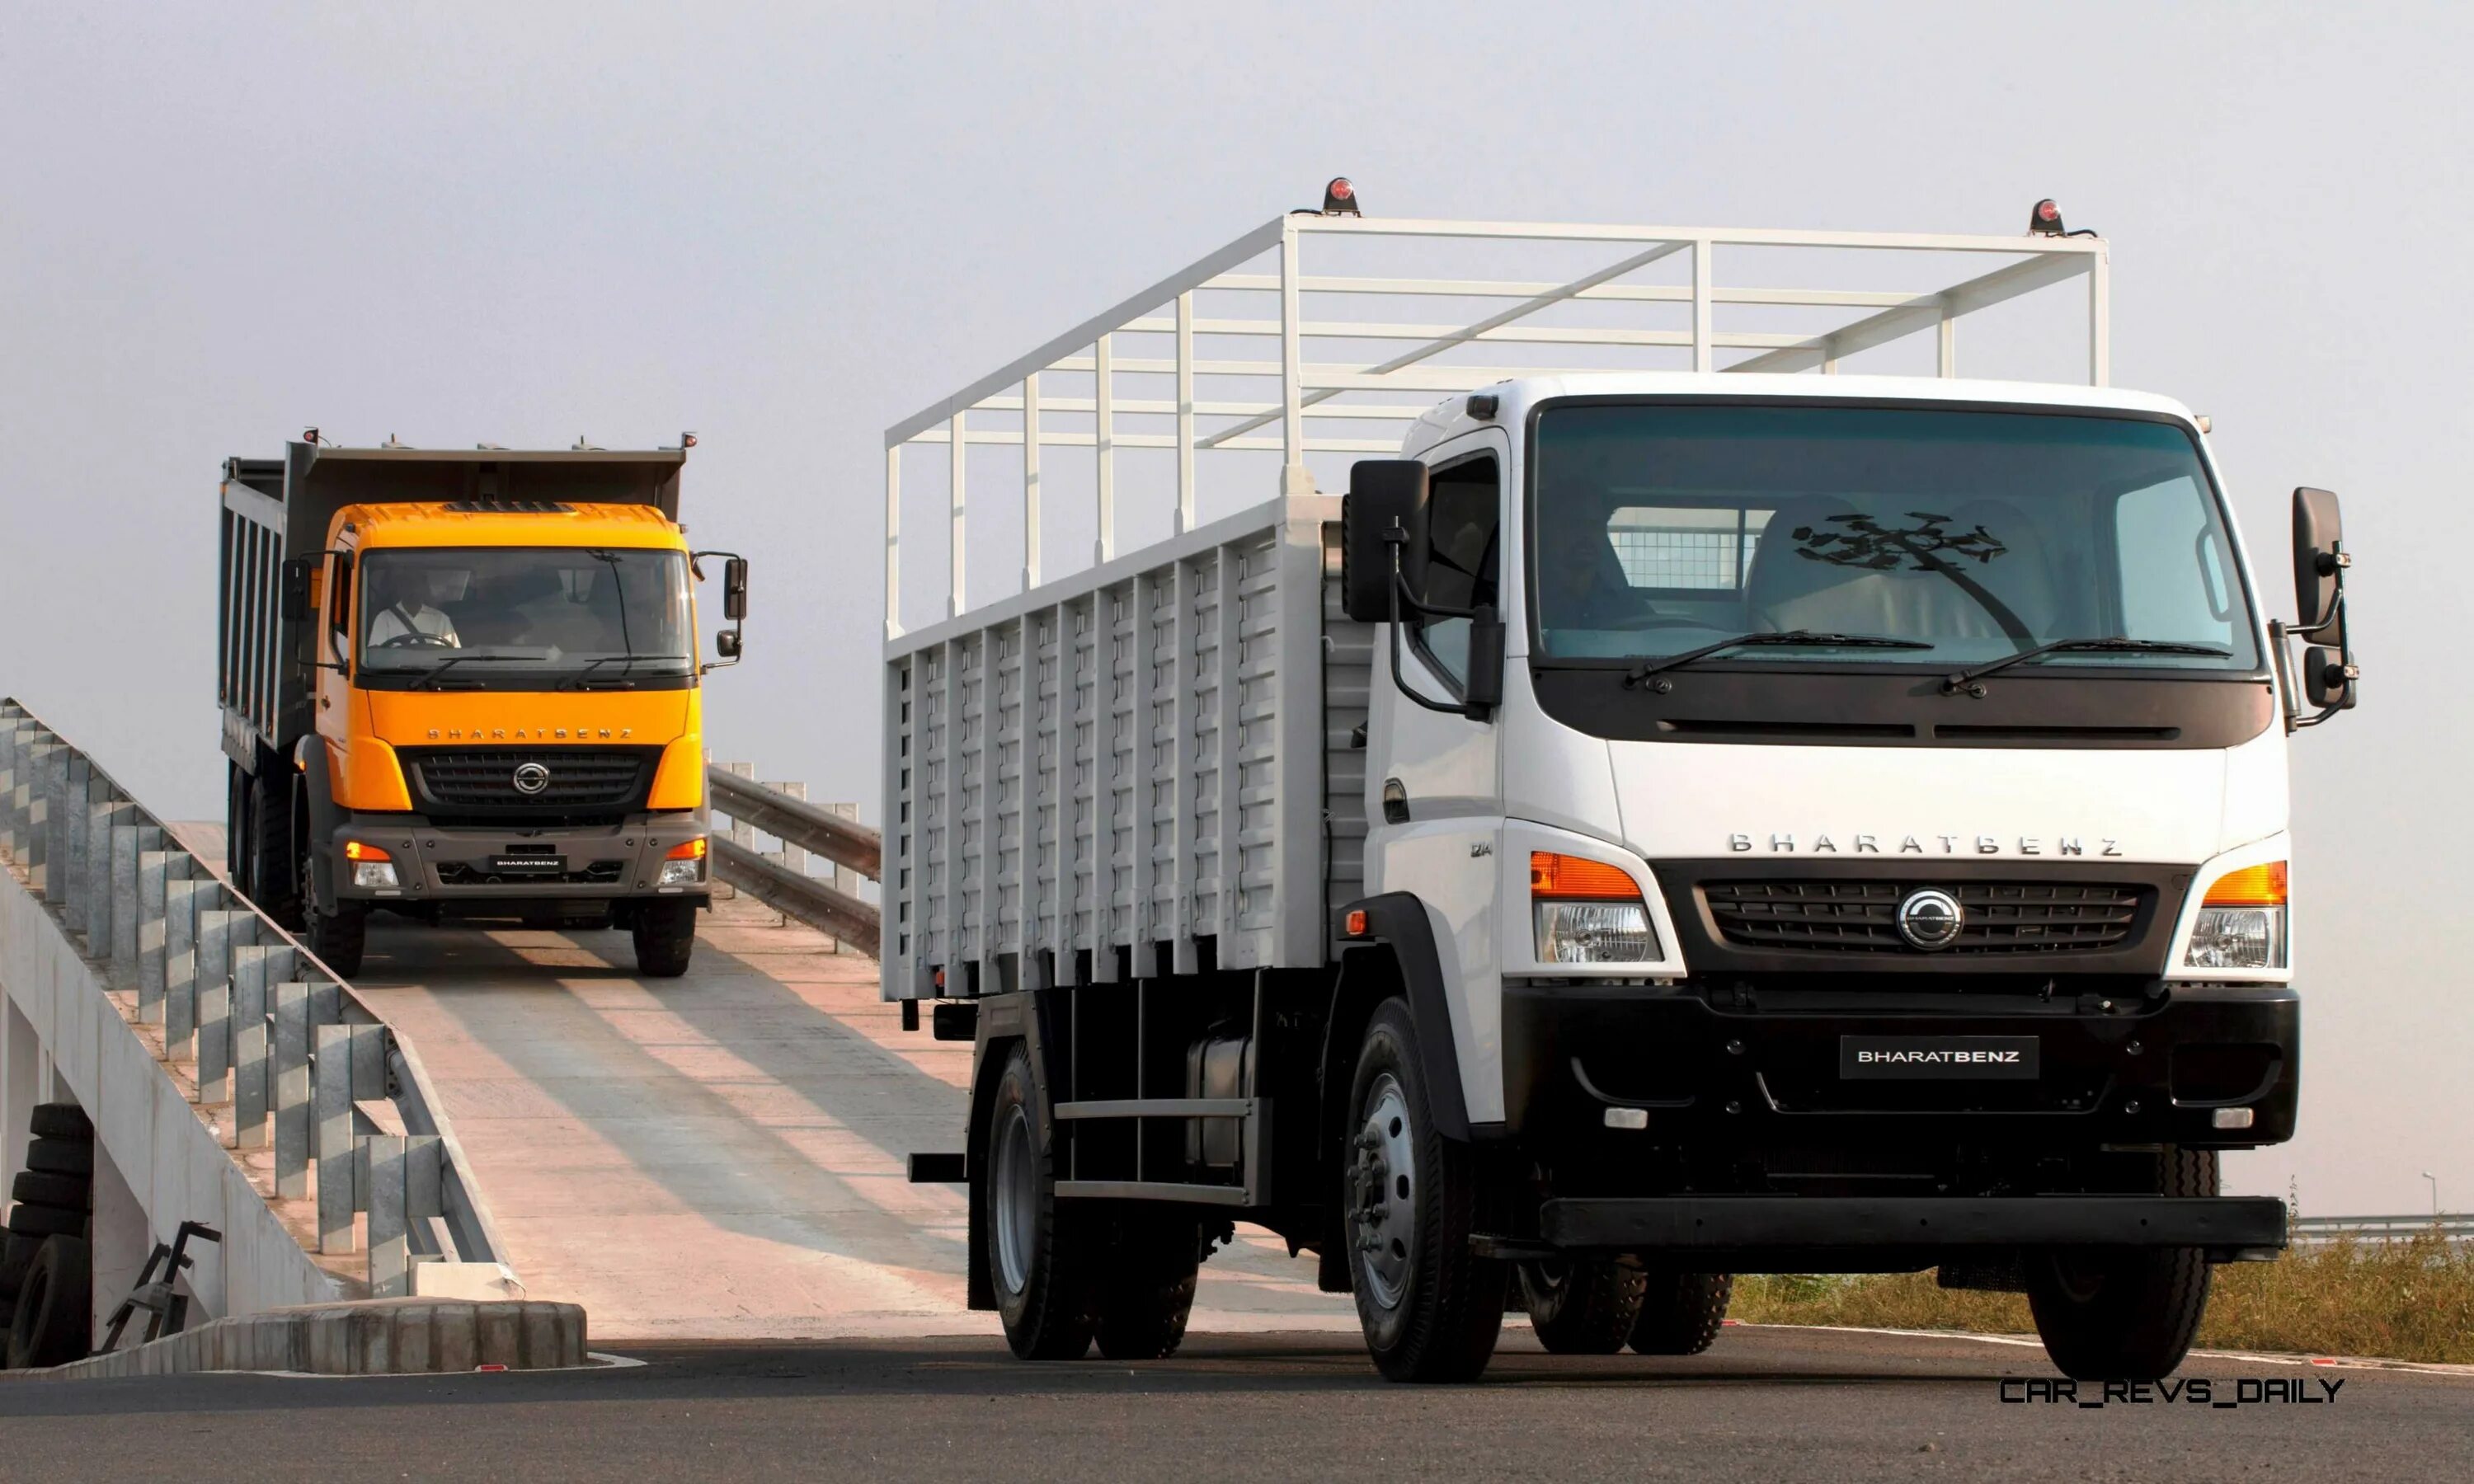 Регистрация грузовик. BHARATBENZ. Индийский коммерческий транспорт. Автосалон грузовиков. Грузовой автосалон.